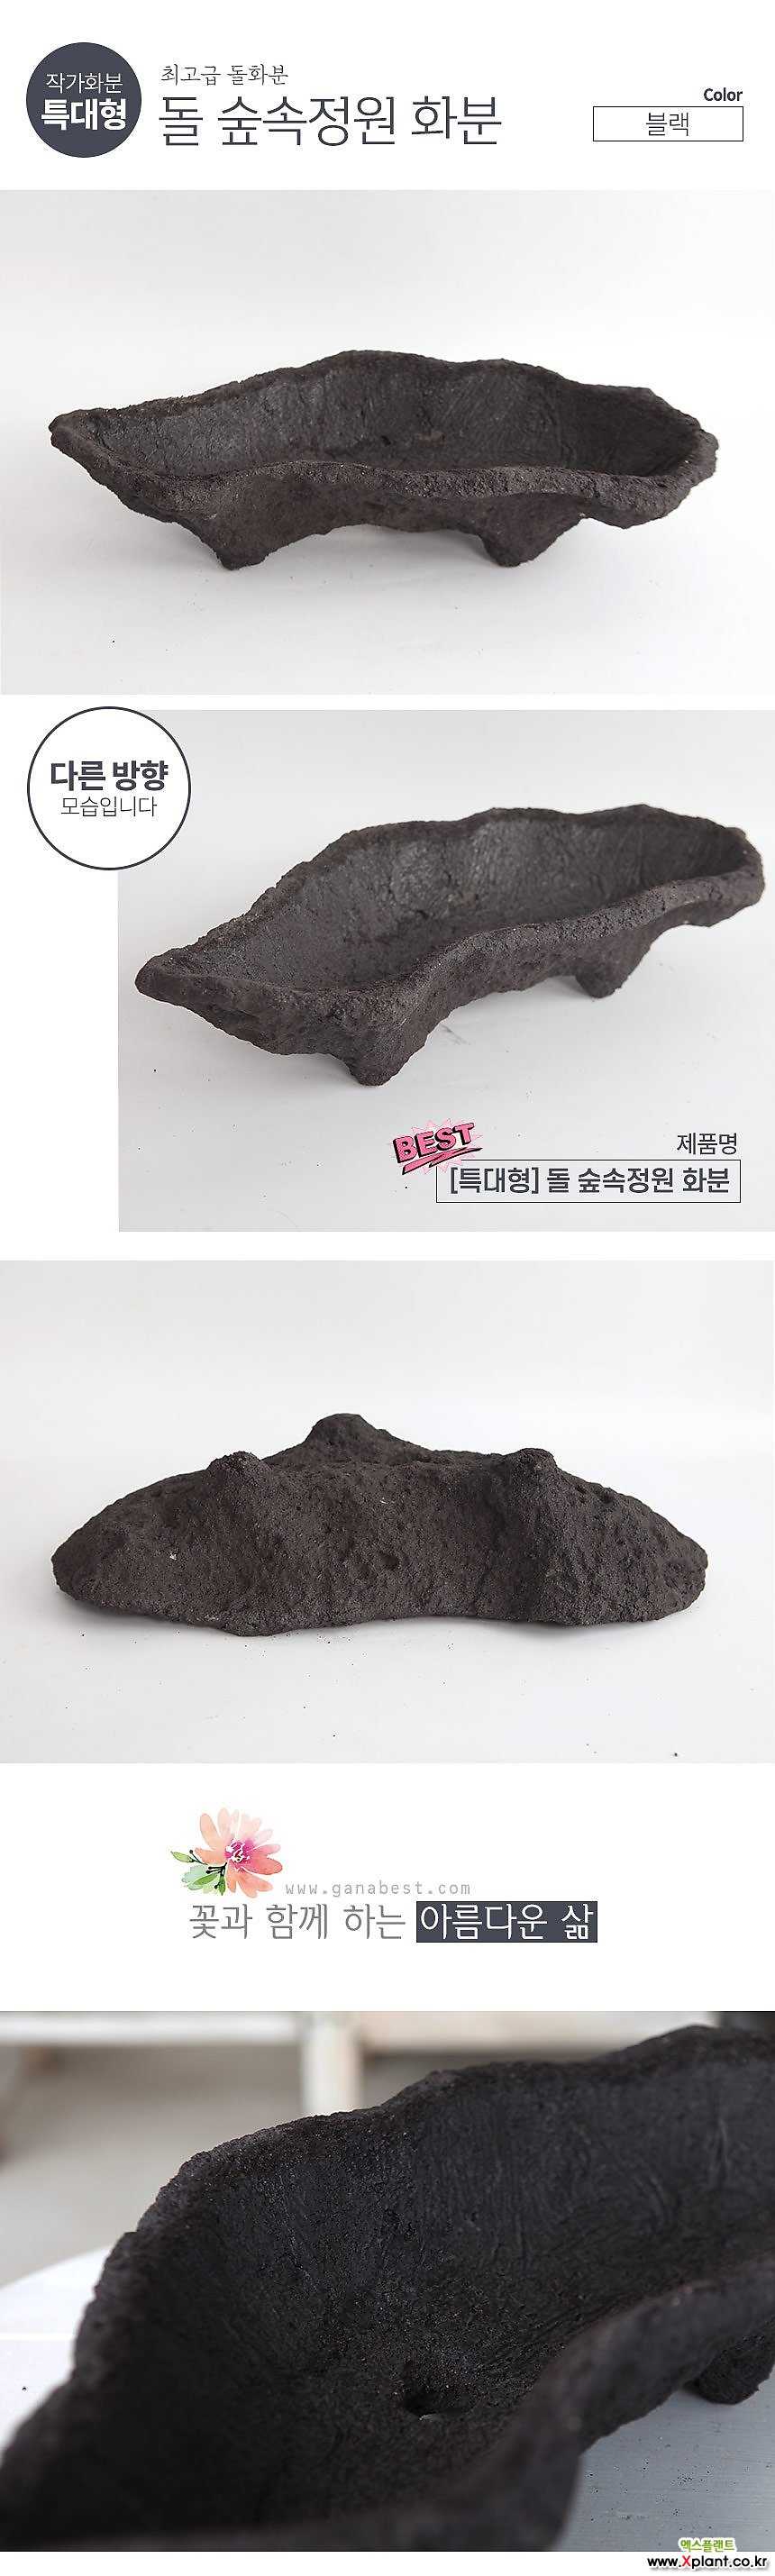 숲속정원(특대형) 돌화분 - 화산석 예쁜 다육 바위솔 베란다 개업 특이한 선물 인아트스튜디오 바위솔